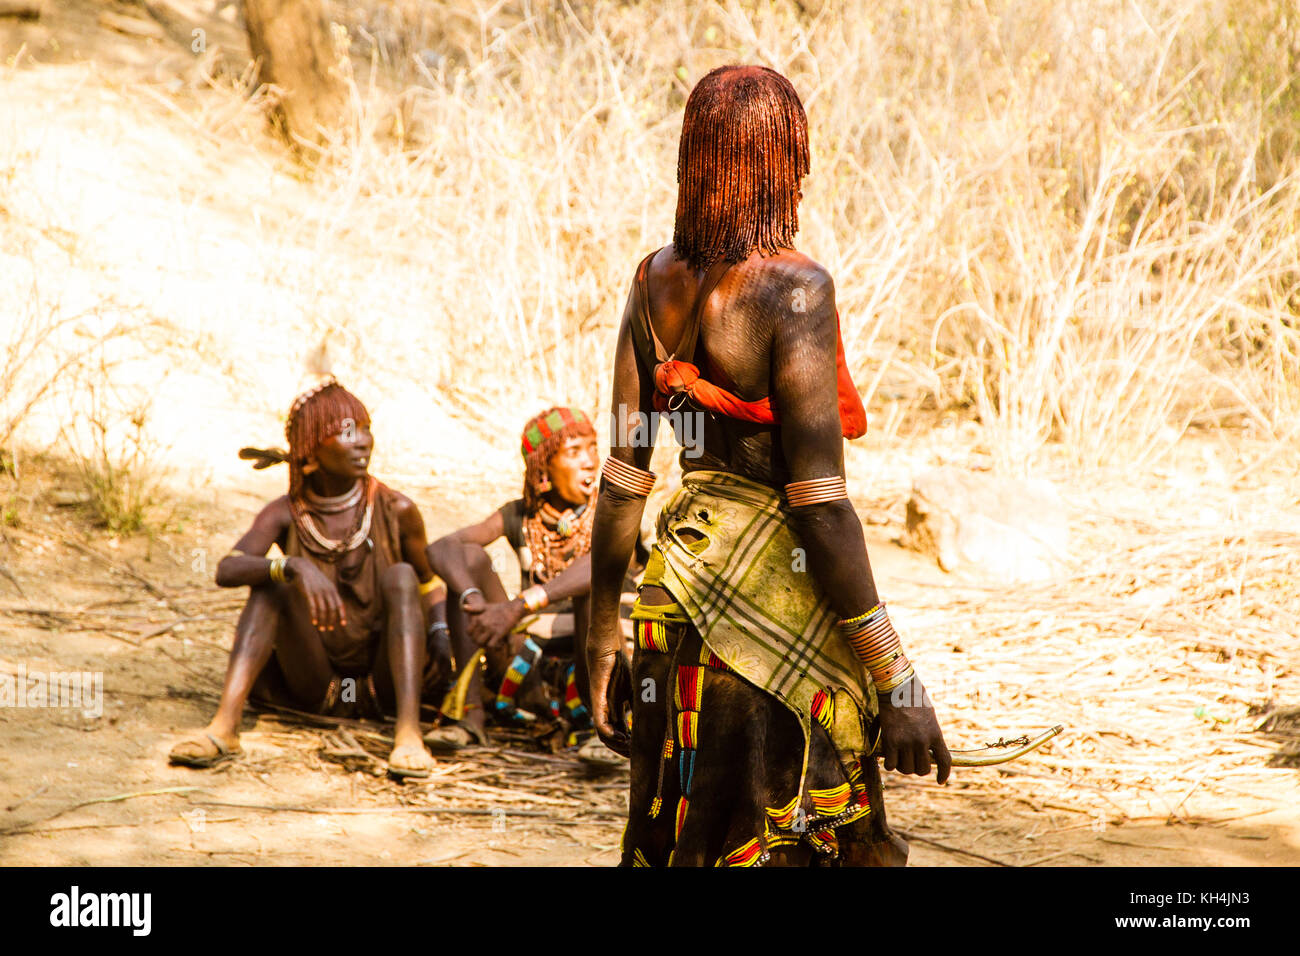 Turmi, Ethiopie - 14/11/16 : une femme de la tribu hamar, purge et de l'effarouchement lourds montrant la flagellation rituelle Banque D'Images